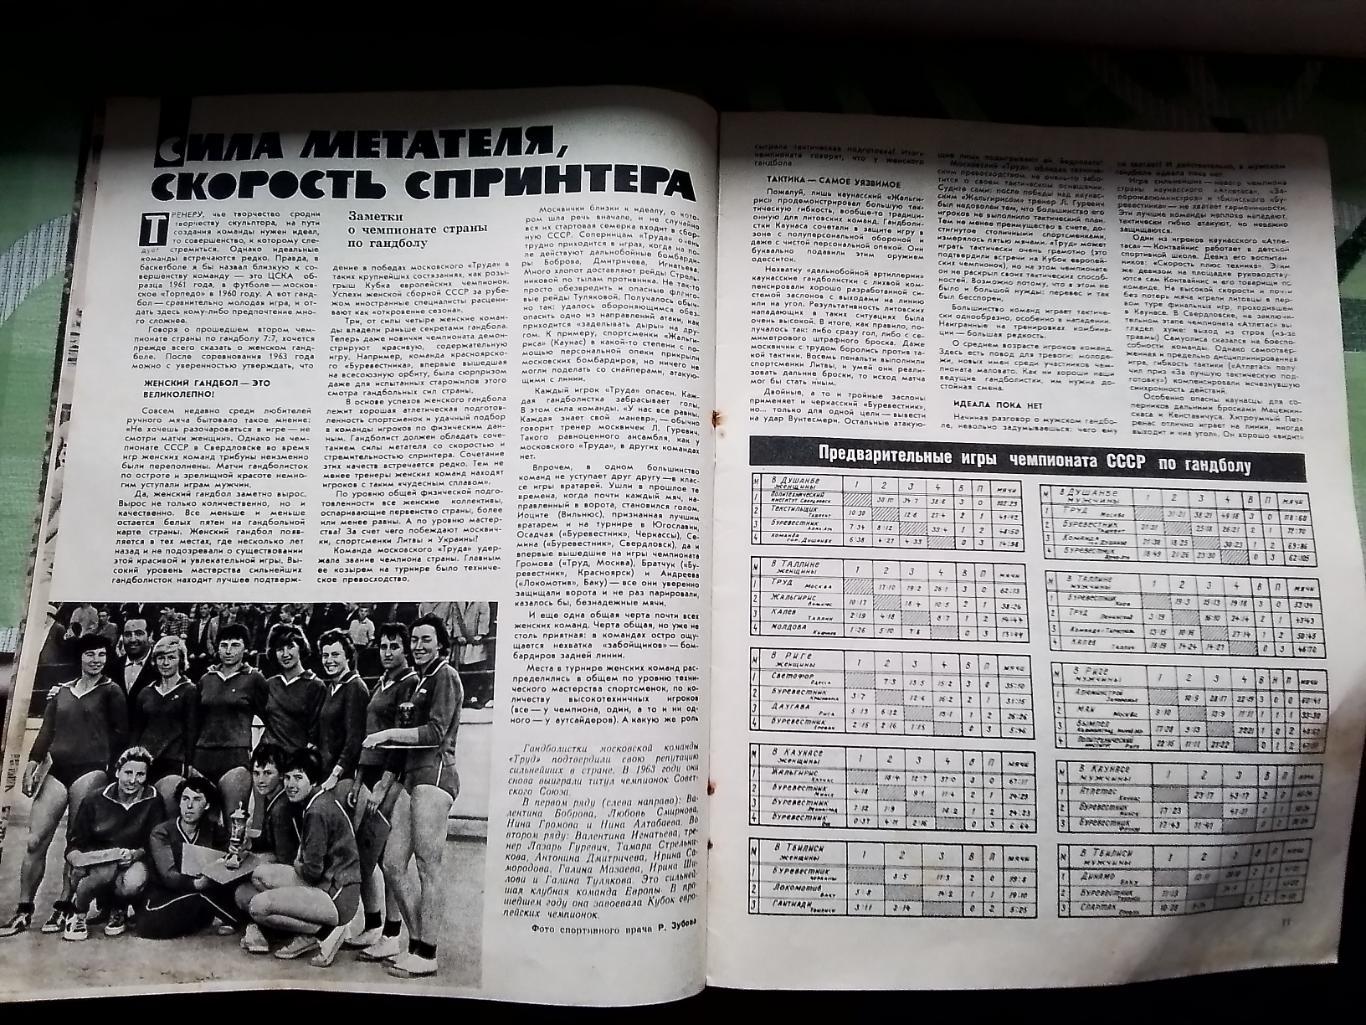 Журнал Спортивные игры 1964 N 1 Таблицы шахматки класса Б и чемпа по гандболу 3